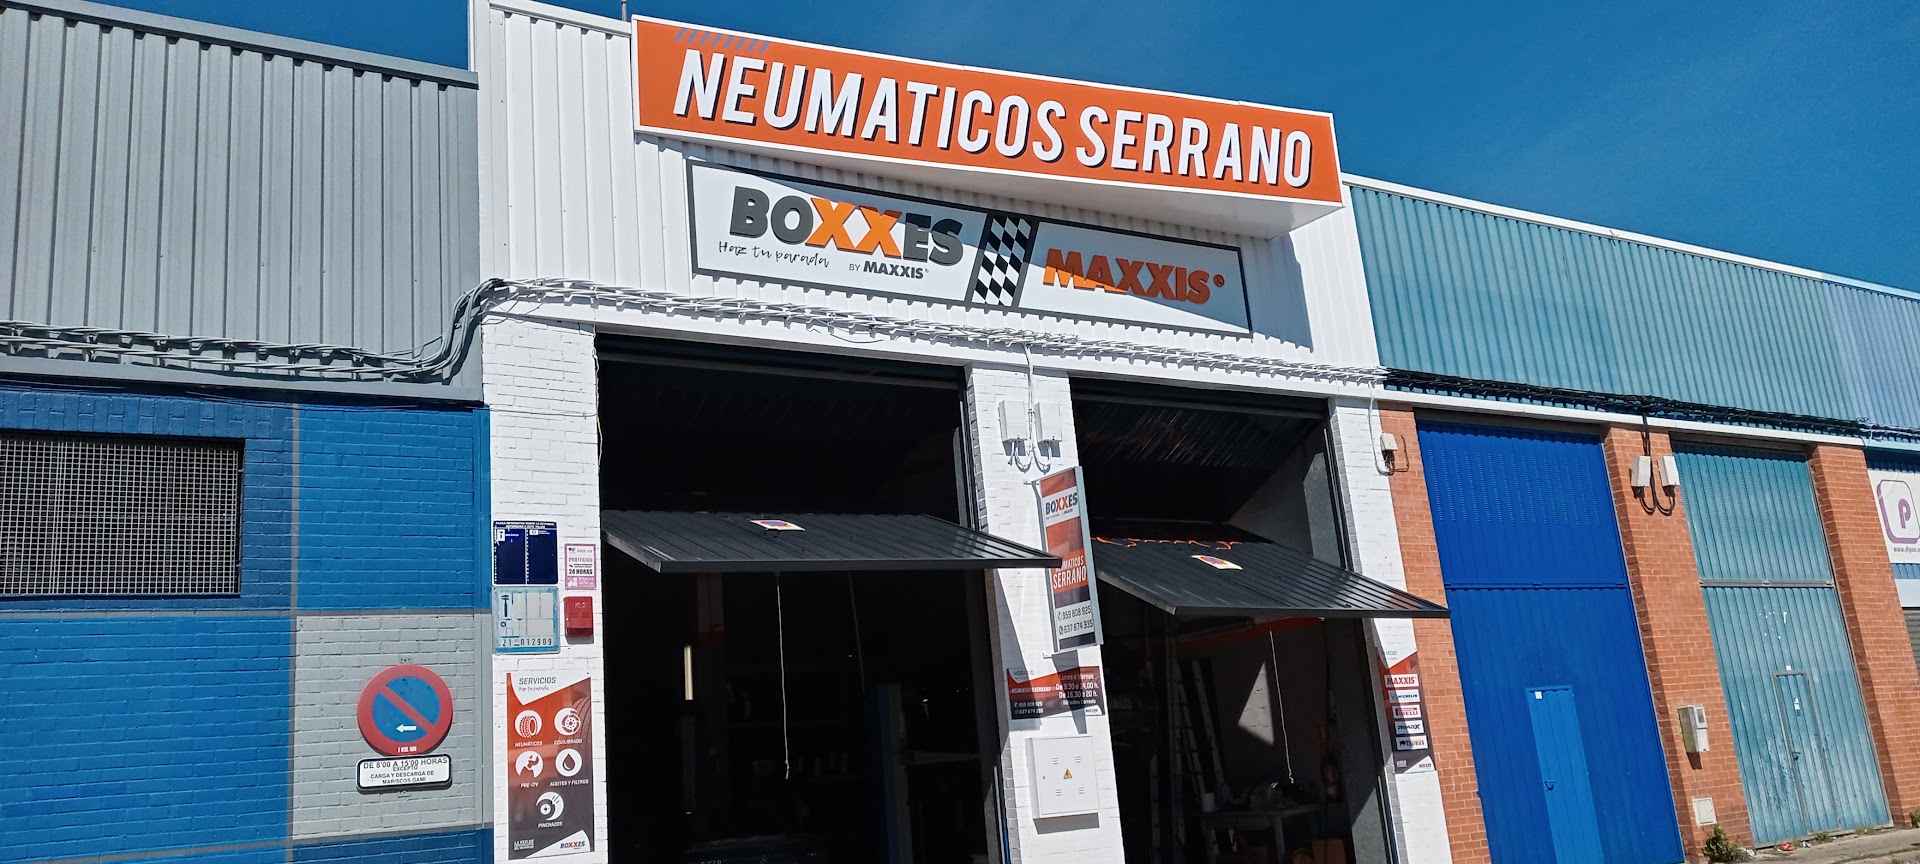 Neumáticos Serrano - venta neumáticos